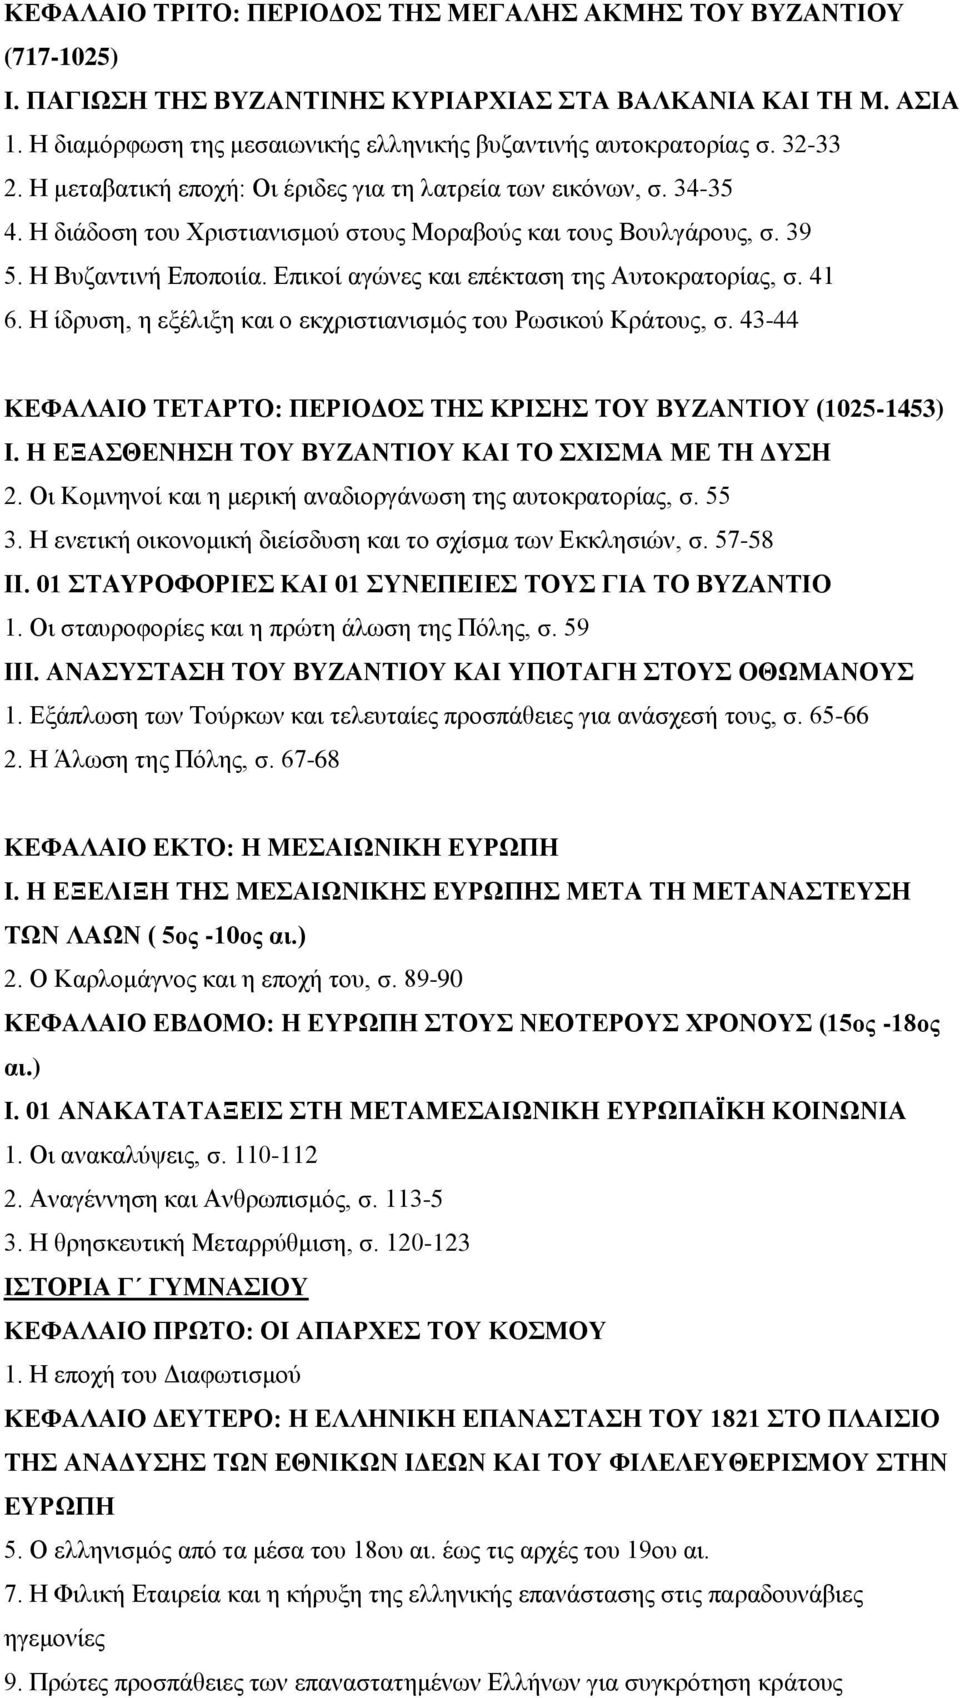 Η διάδοση του Χριστιανισμού στους Μοραβούς και τους Βουλγάρους, σ. 39 5. Η Βυζαντινή Εποποιία. Επικοί αγώνες και επέκταση της Αυτοκρατορίας, σ. 41 6.